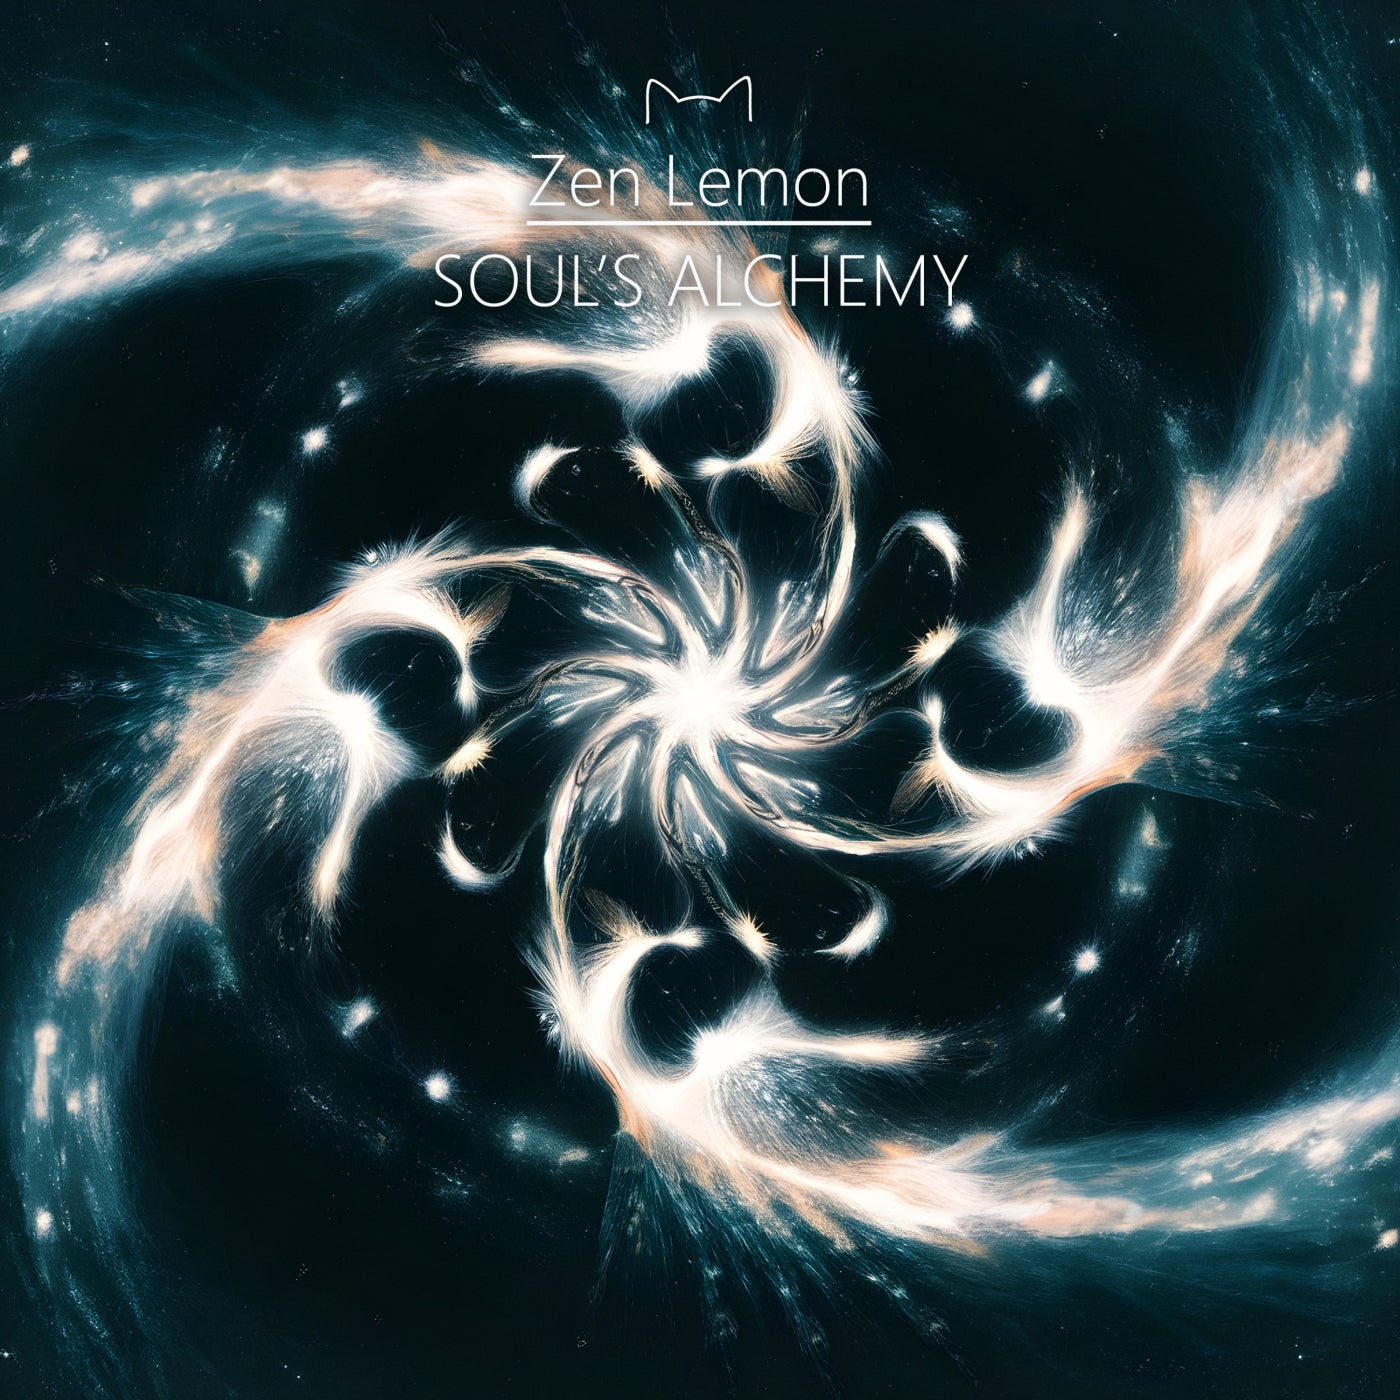 Soul's Alchemy